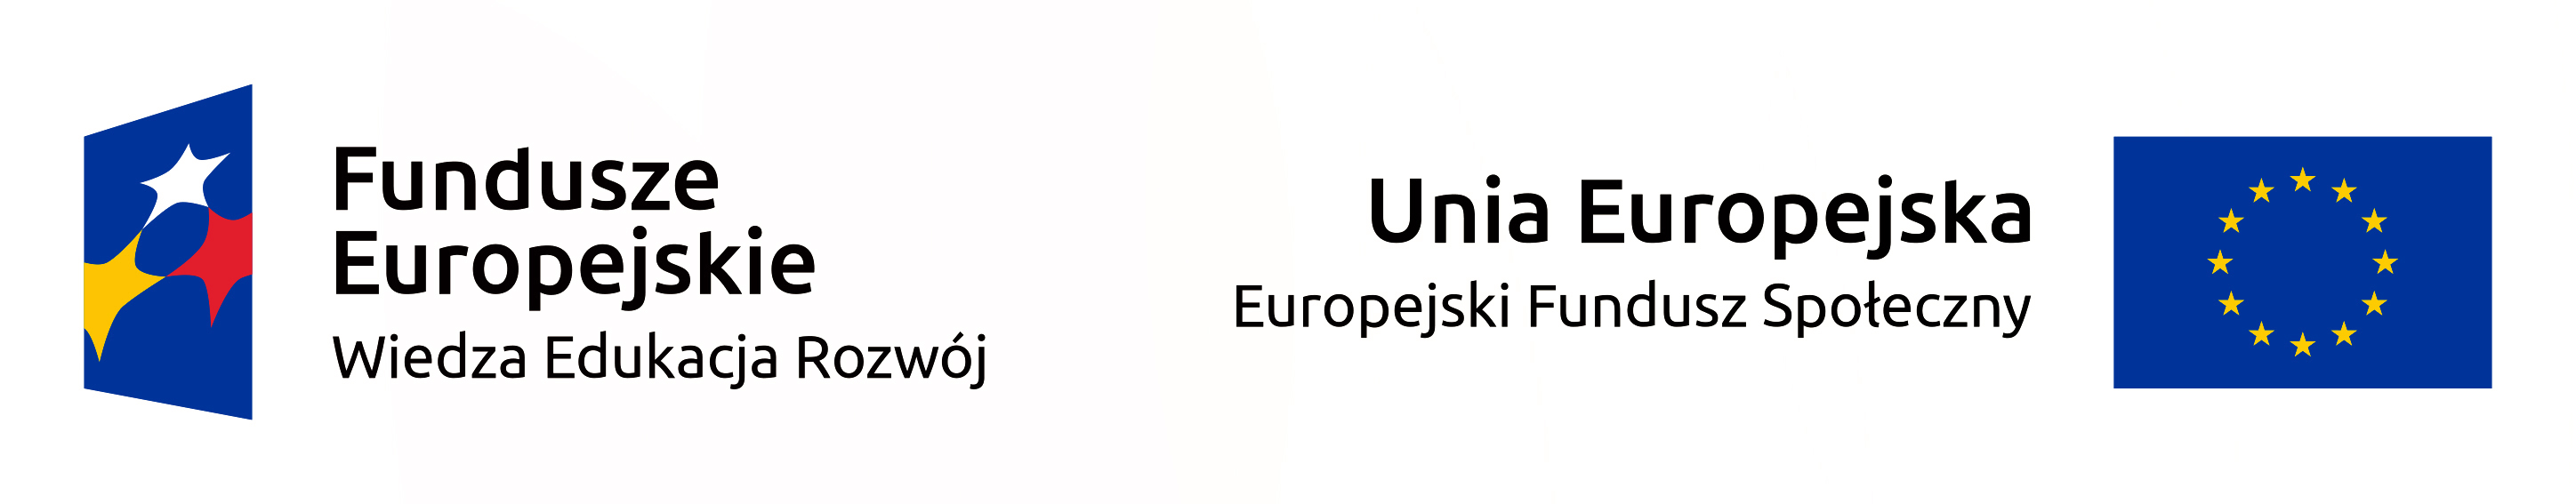 LOGO Funduszy Europejskich i Unii Europejskiej